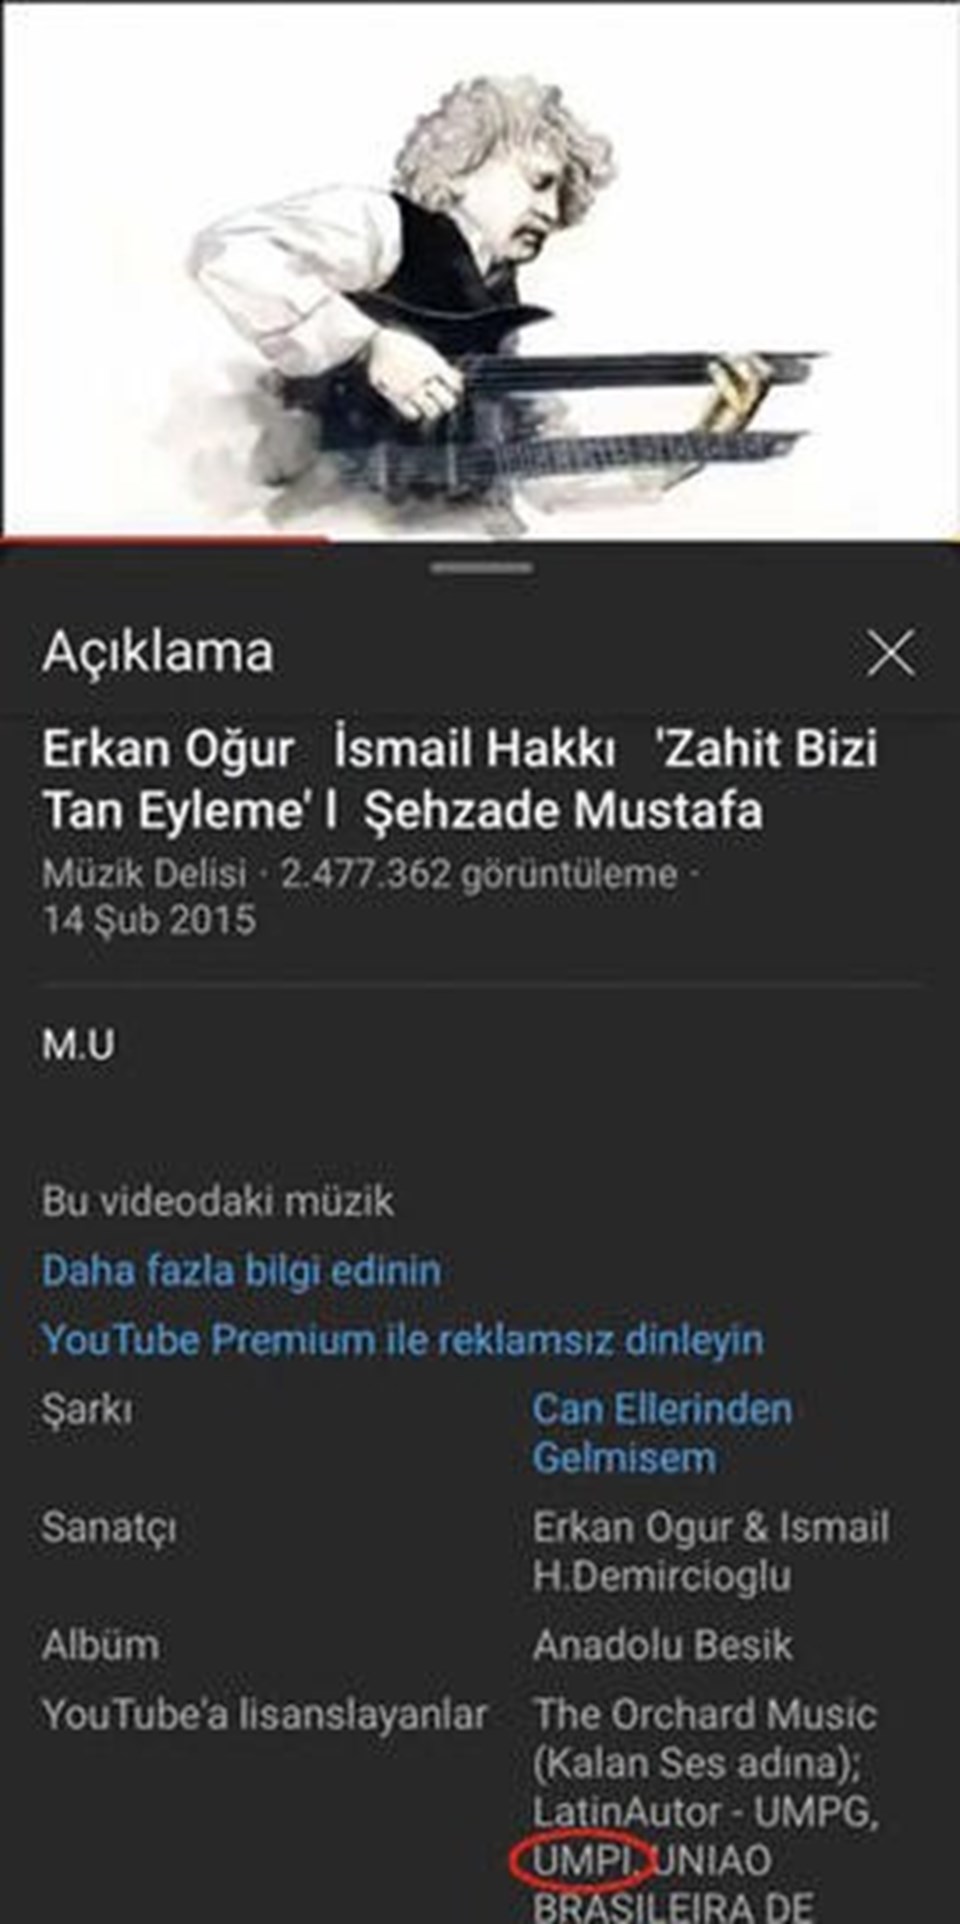 Amerikan Universal'dan Türk müziklerinden hak talebi - 1